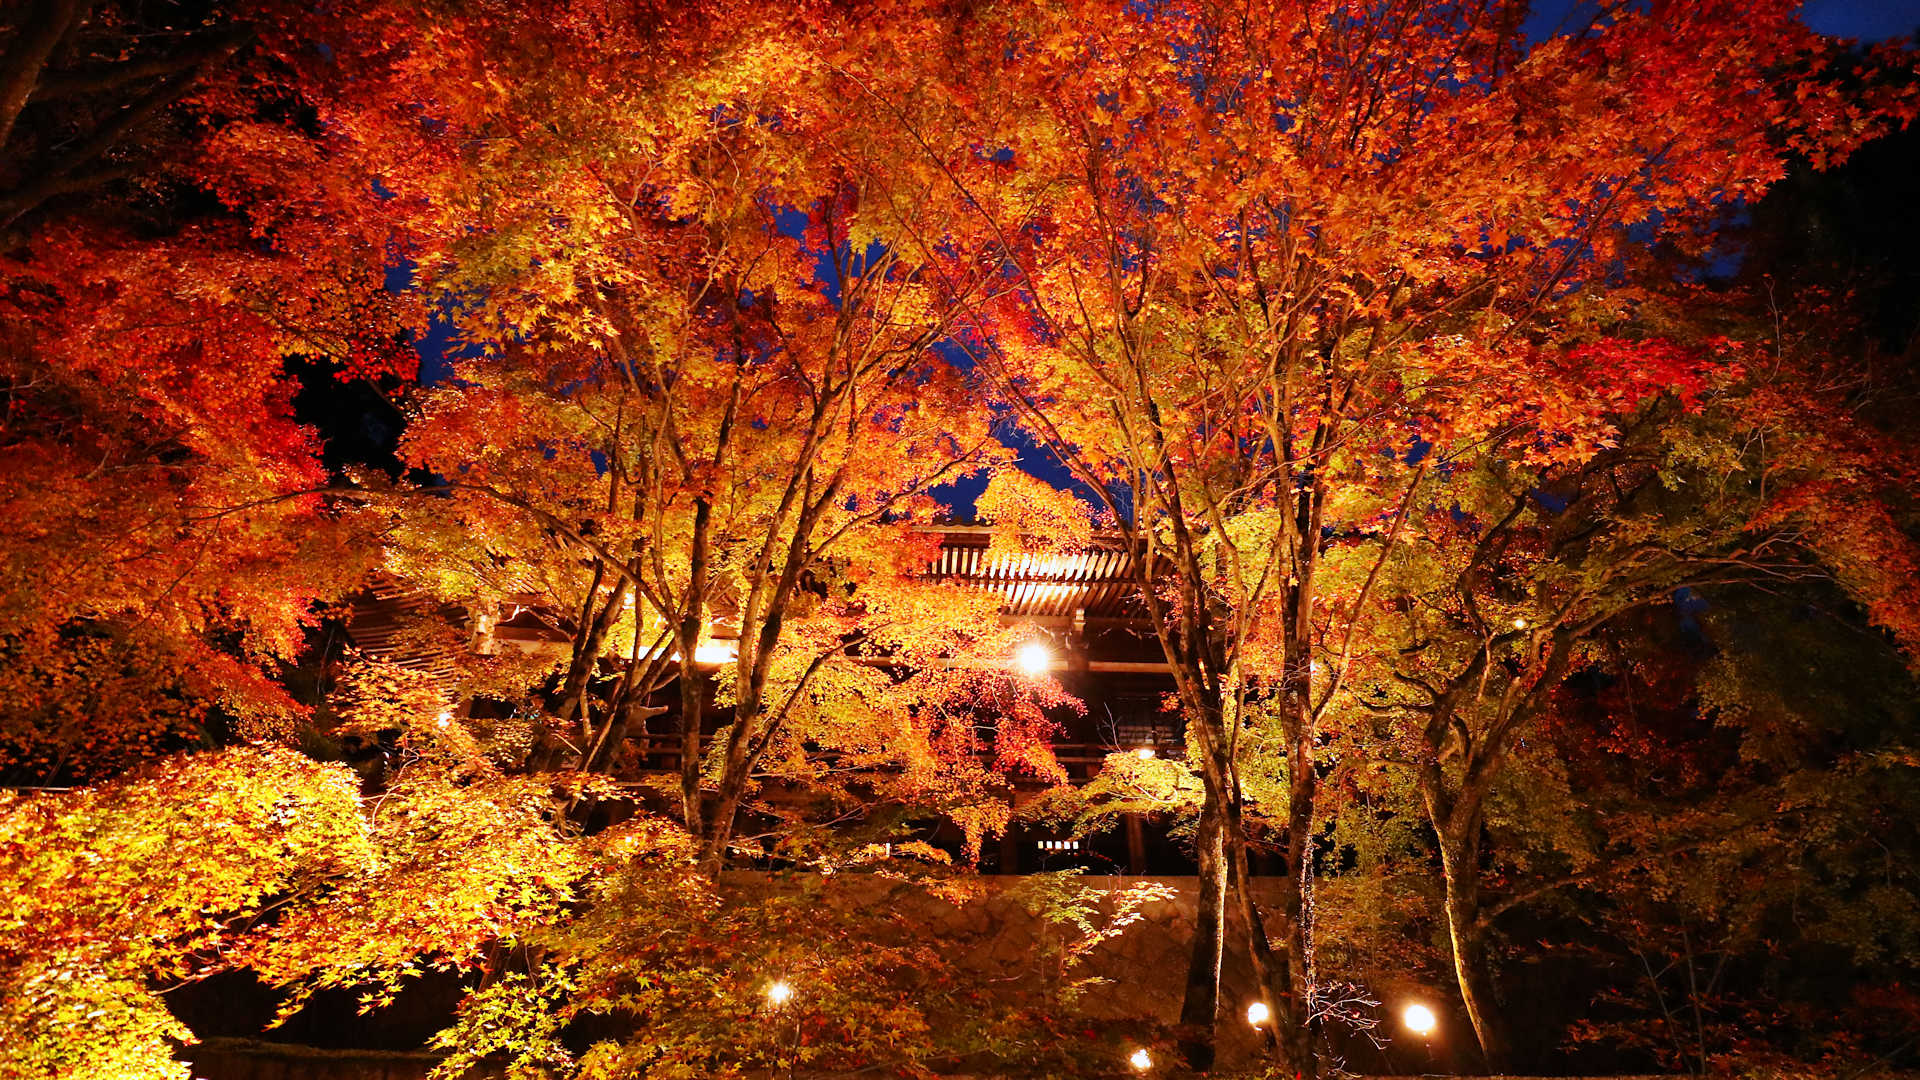 播州清水寺 千燈会 と紅葉ライトアップ 大紅葉まつり も同時開催